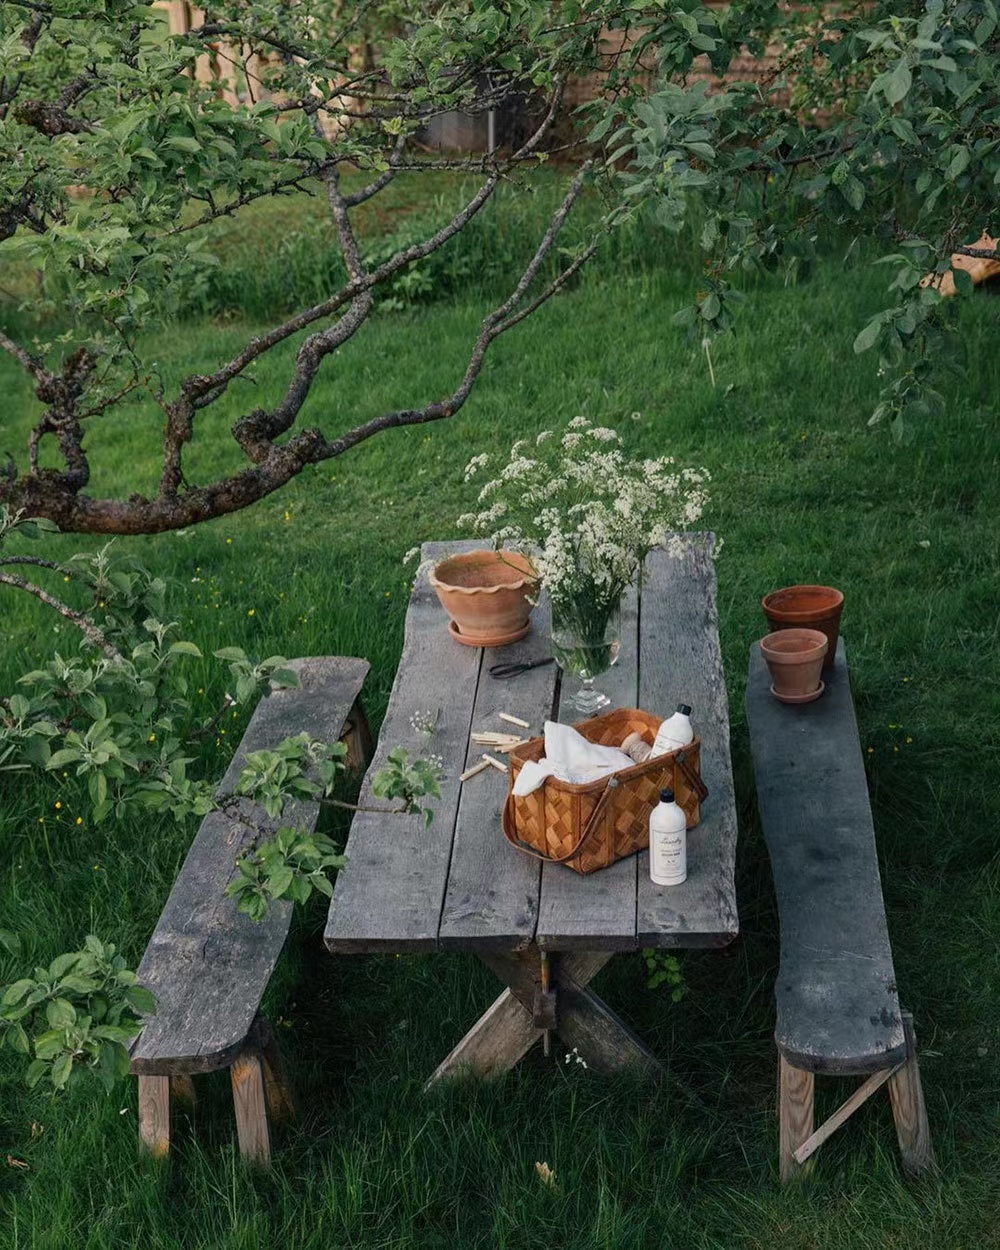 摄影师一家古典浪漫的北欧小屋,加入质朴的藤编,生活在宁静之中